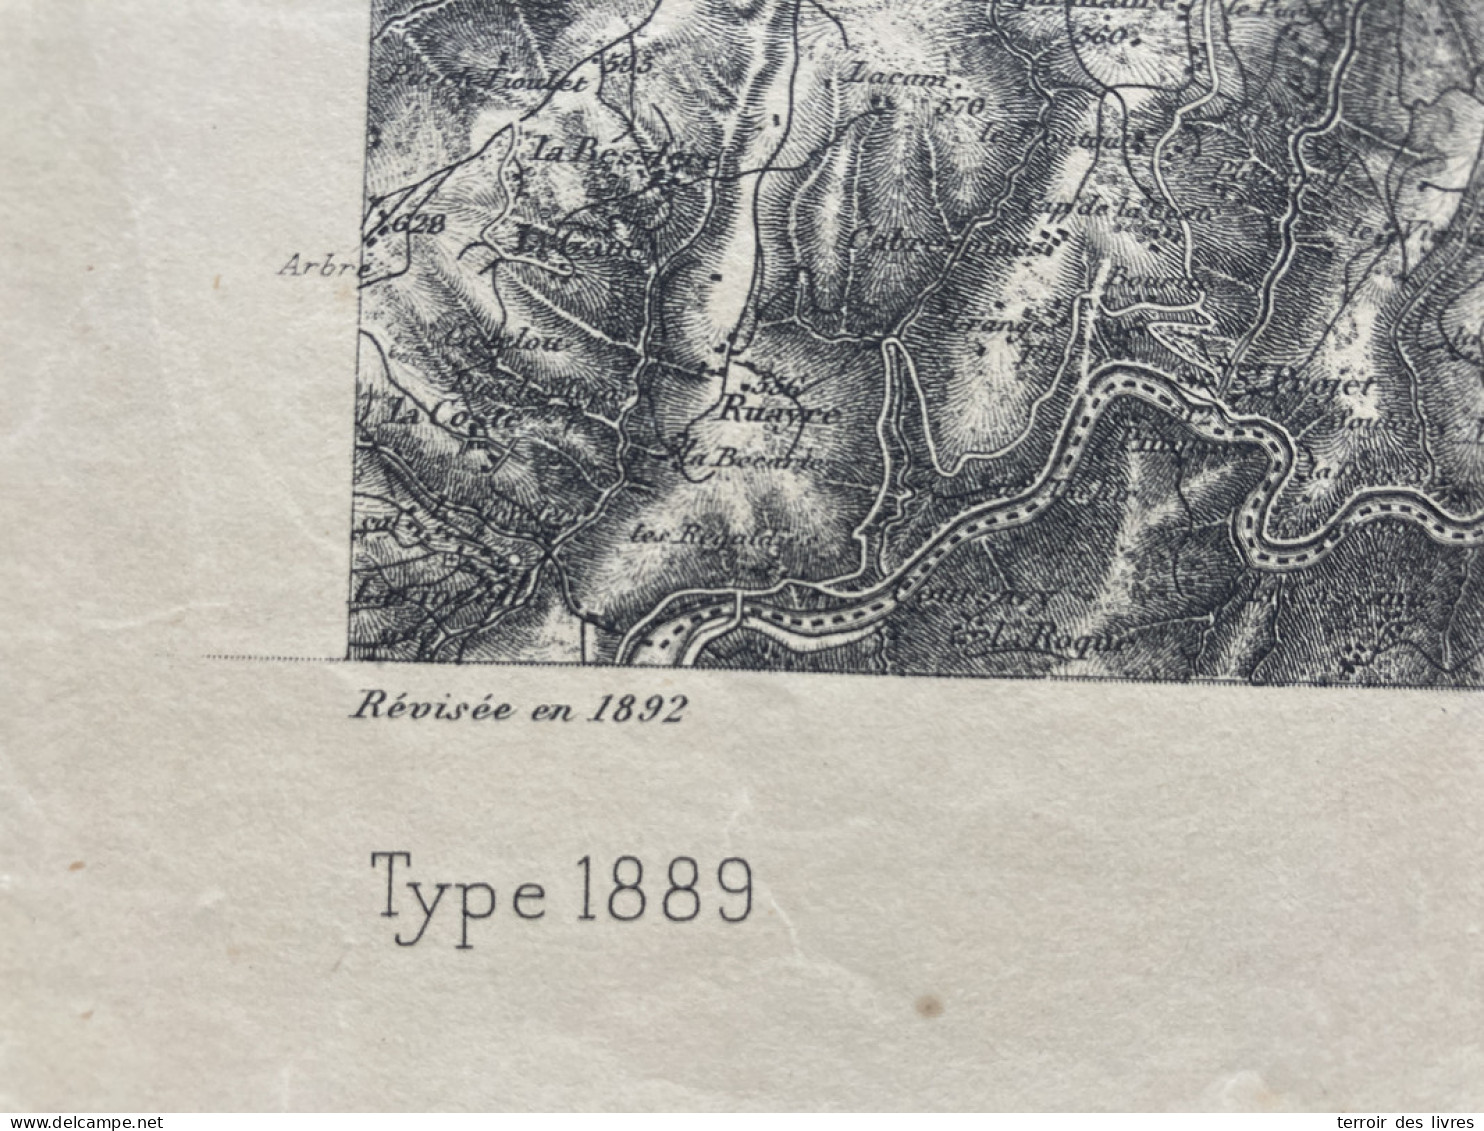 Carte état Major FIGEAC 1892 35x54cm LADINHAC LEUCAMP LAPEYRUGUE LABESSERETTE SANSAC-VEINAZES MUROLS LAFEUILLADE-EN-VEZI - Geographische Kaarten